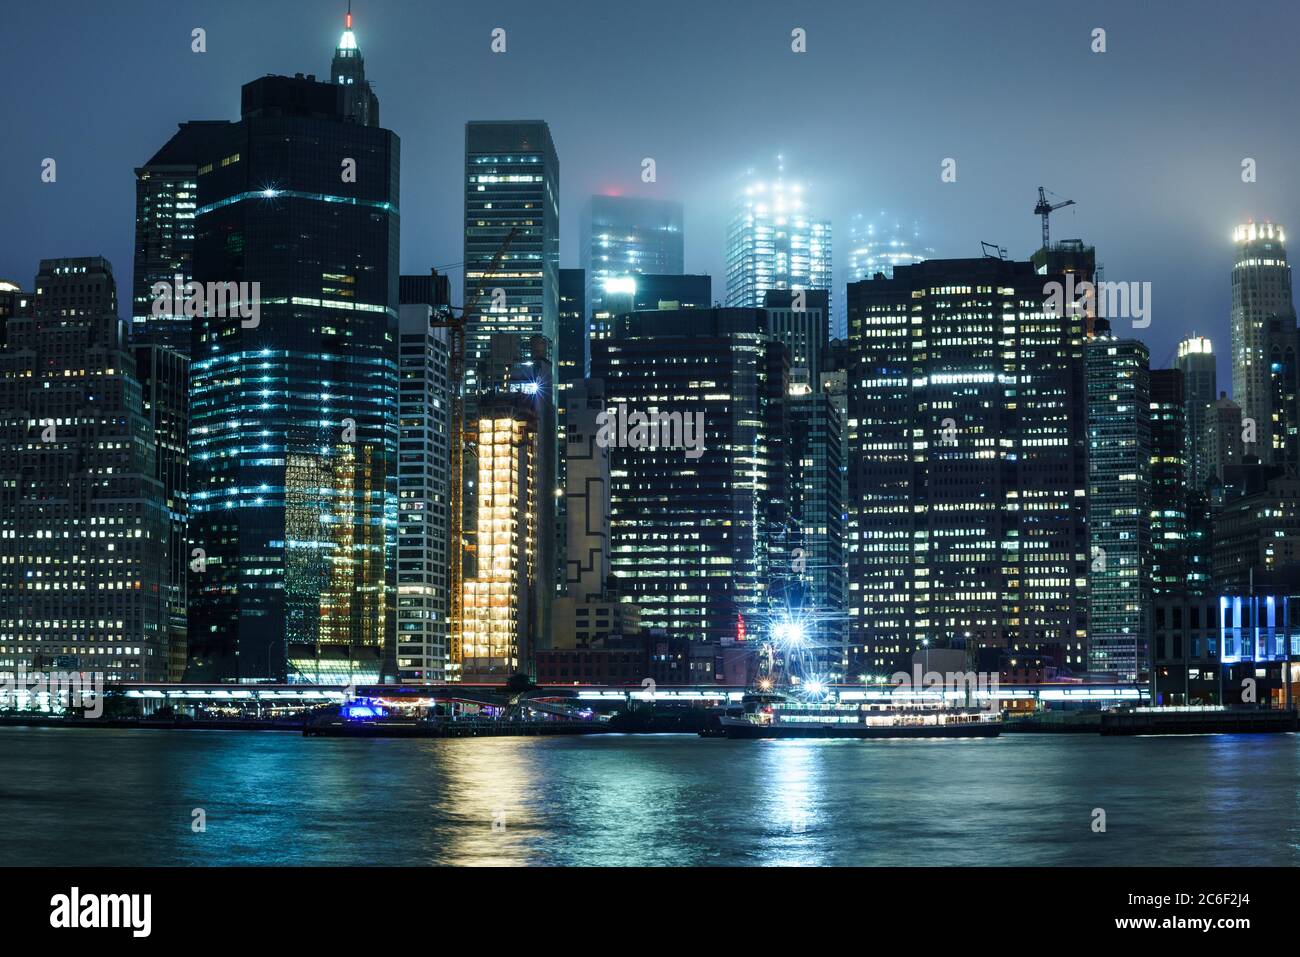 Vue sur l'île de Manhattan la nuit avec la lumière des bâtiments qui réfléchit sur l'eau par une journée brumeuse Banque D'Images